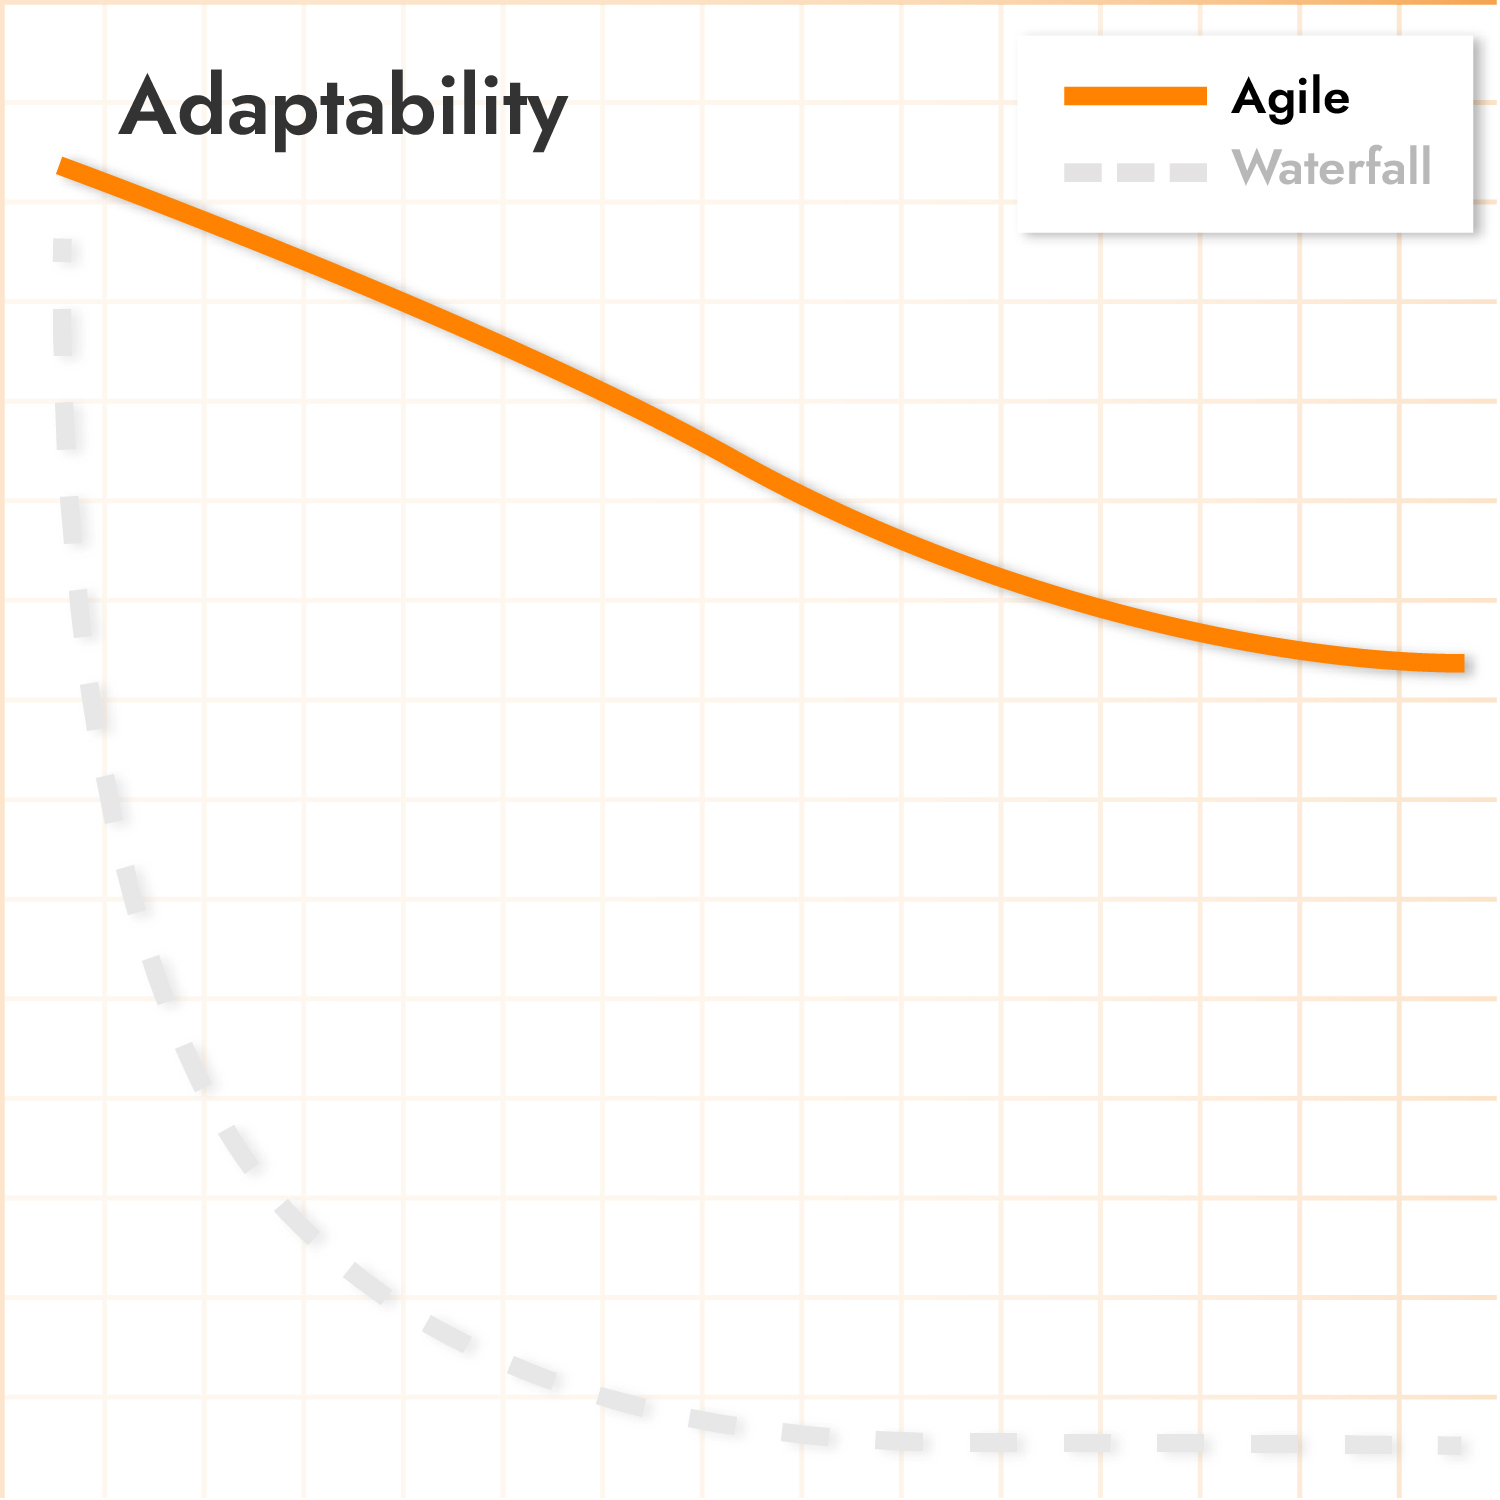 Sieh dir an wie sich die Adaptivity des agilen Projektmanagement entwickelt